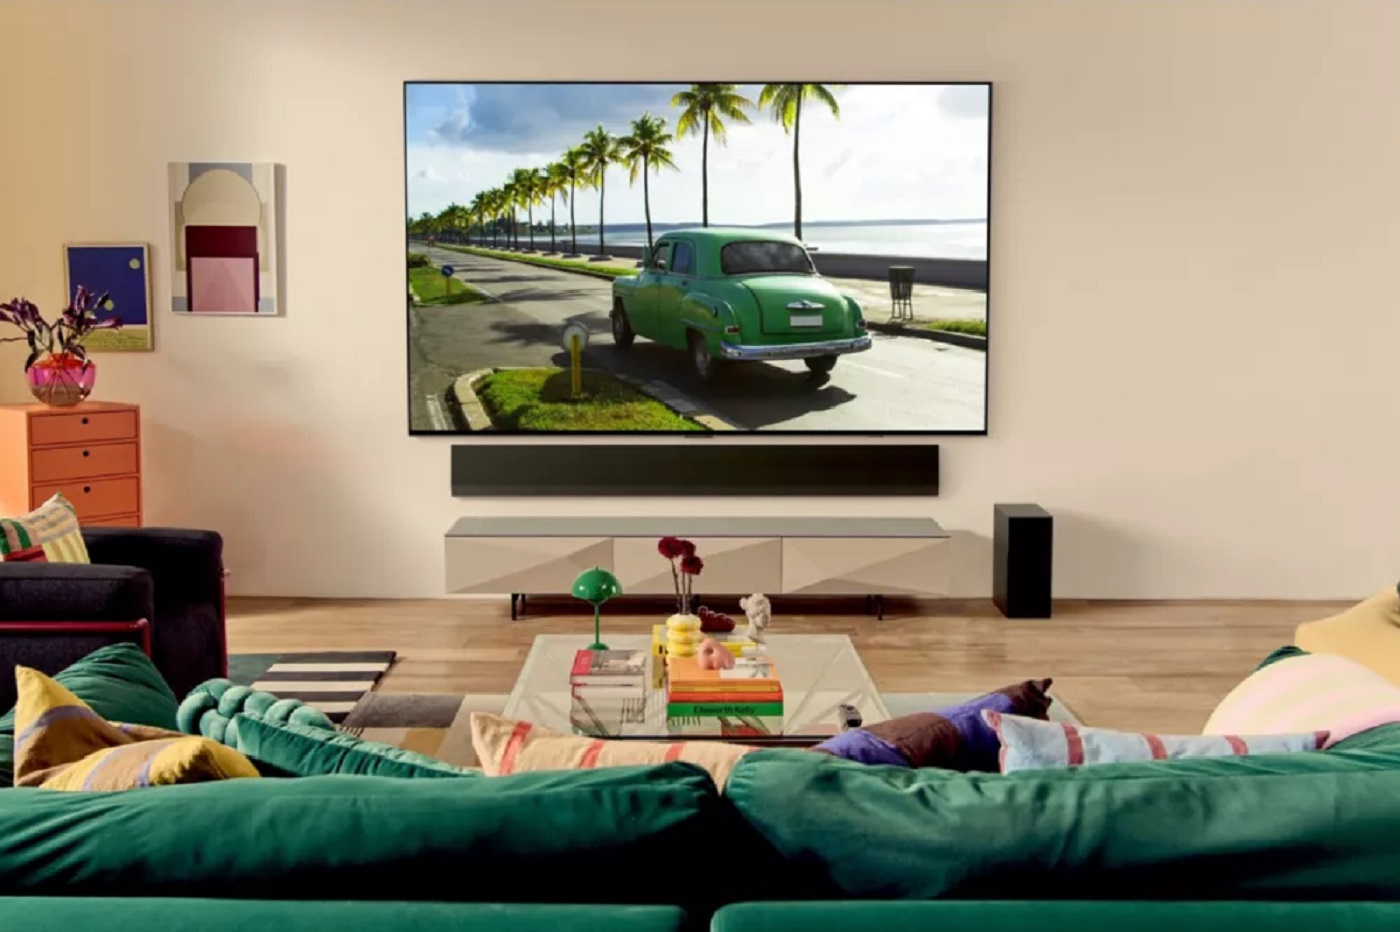 Exceptionnel : la télévision LG OLED 55 pouces s'affiche à moins